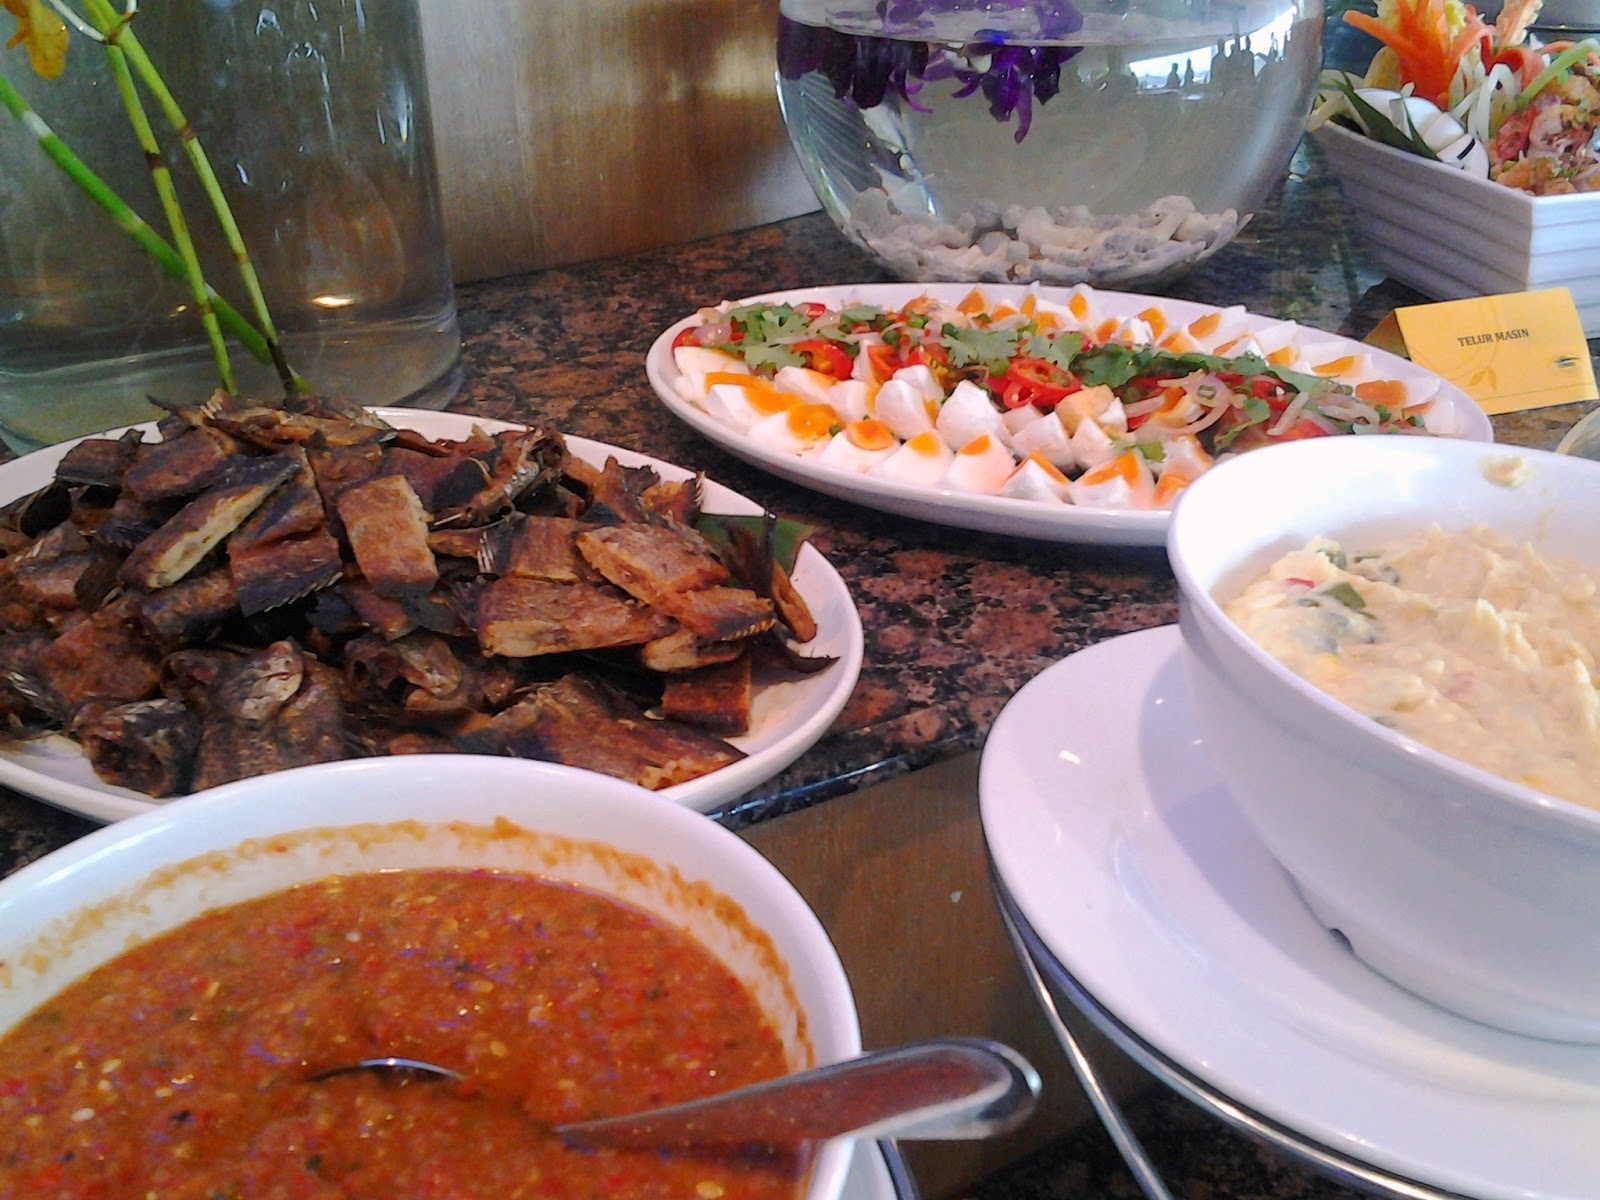 Lunch Buffet @ Picc : Tempat Makan Yang Best - Catatan Sue 